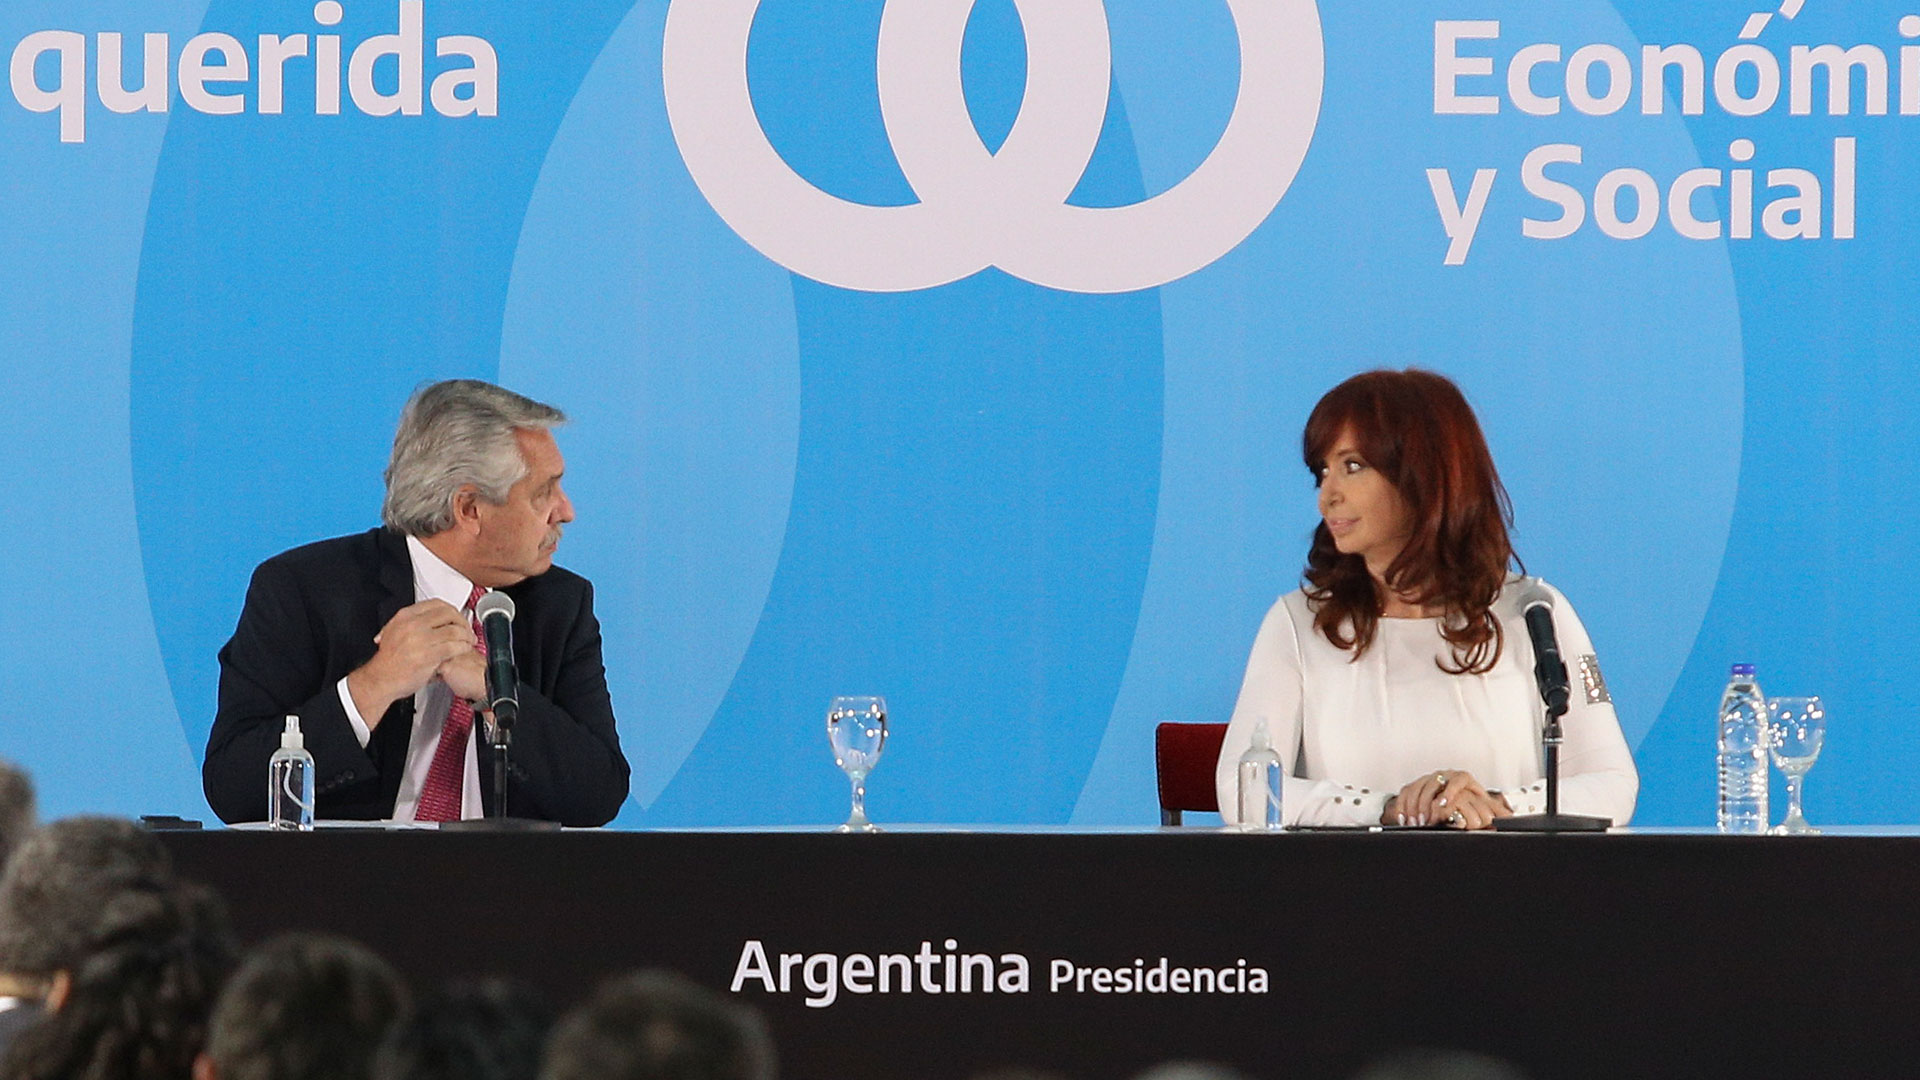 La organización no gubernamental resaltó la retórica hostil que emplean el presidente Alberto Fernández y su vicepresidente, Cristina Fernández de Kirchner contra el Poder Judicial y la prensa independiente (NA)